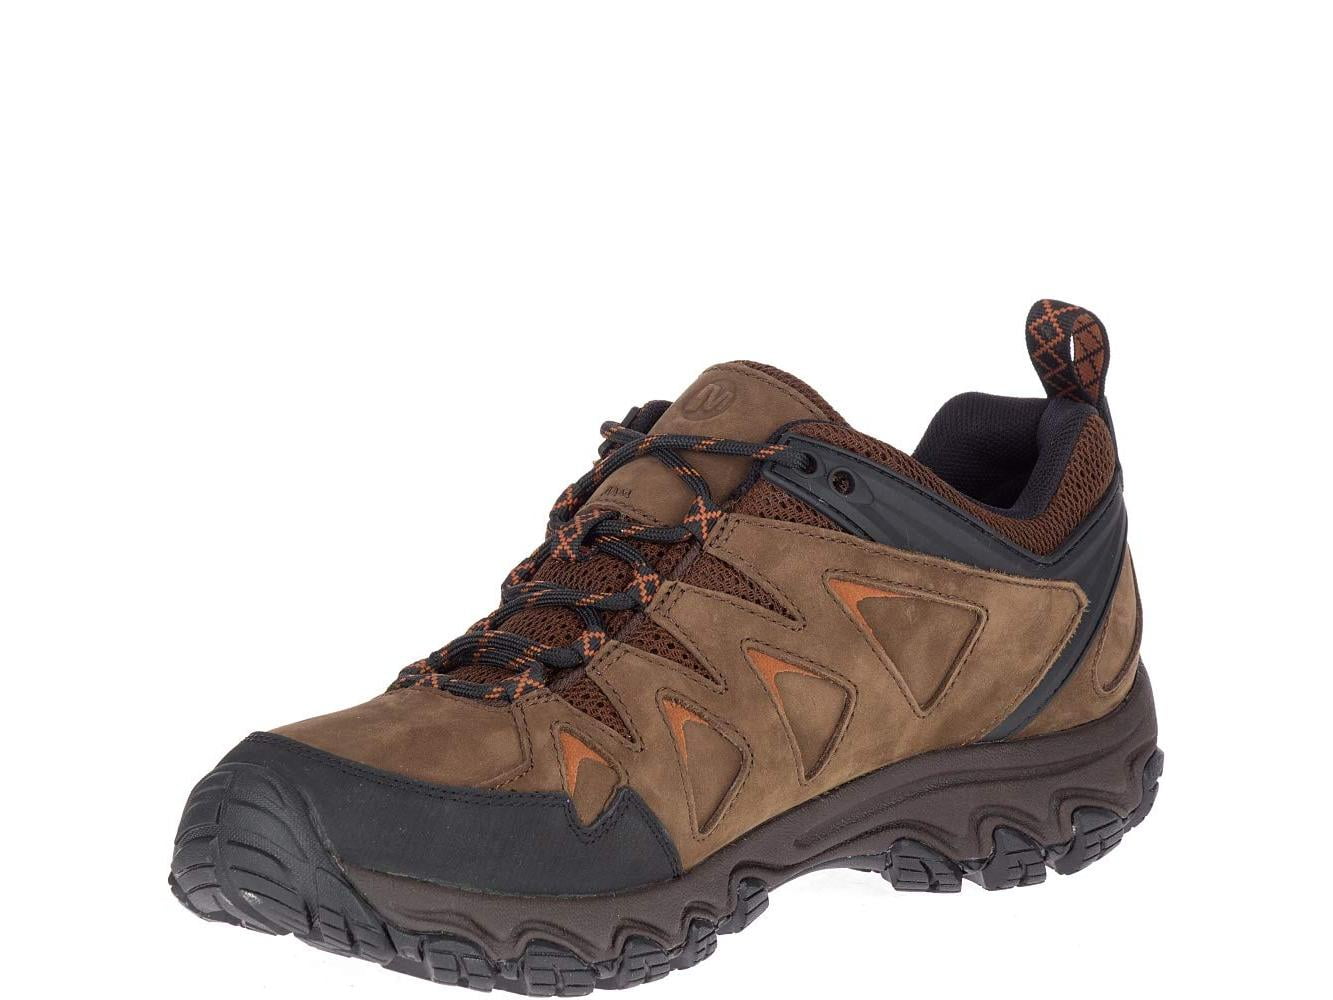 Merrell - Merrell Men's Pulsate 2 LTR Waterproof Hiking Shoe, Dark ...